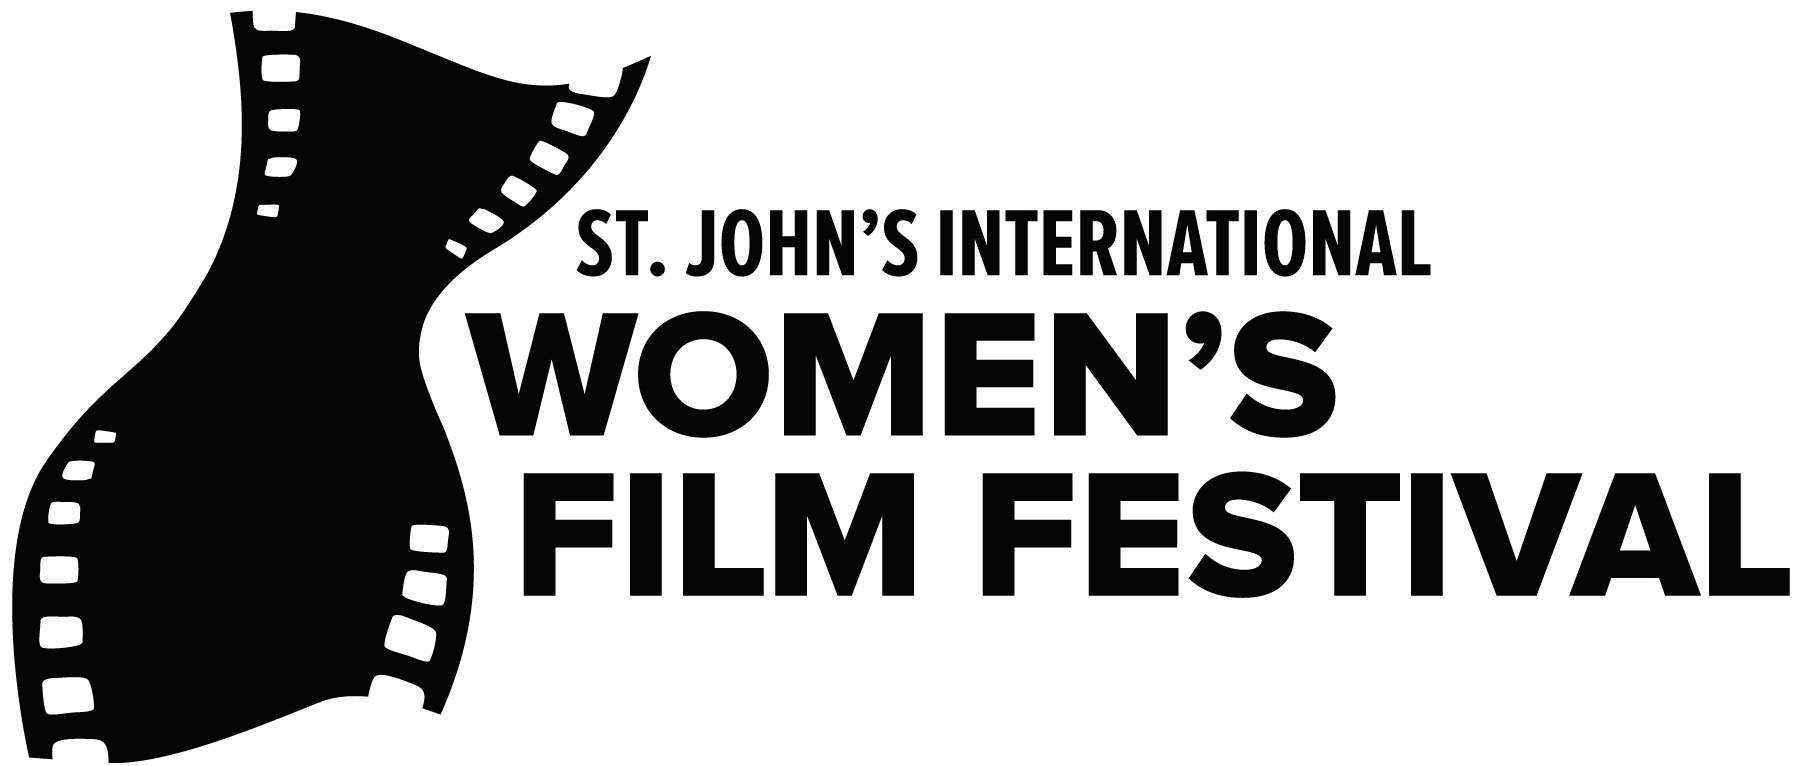 St. John's International Women's Film Festival Logo